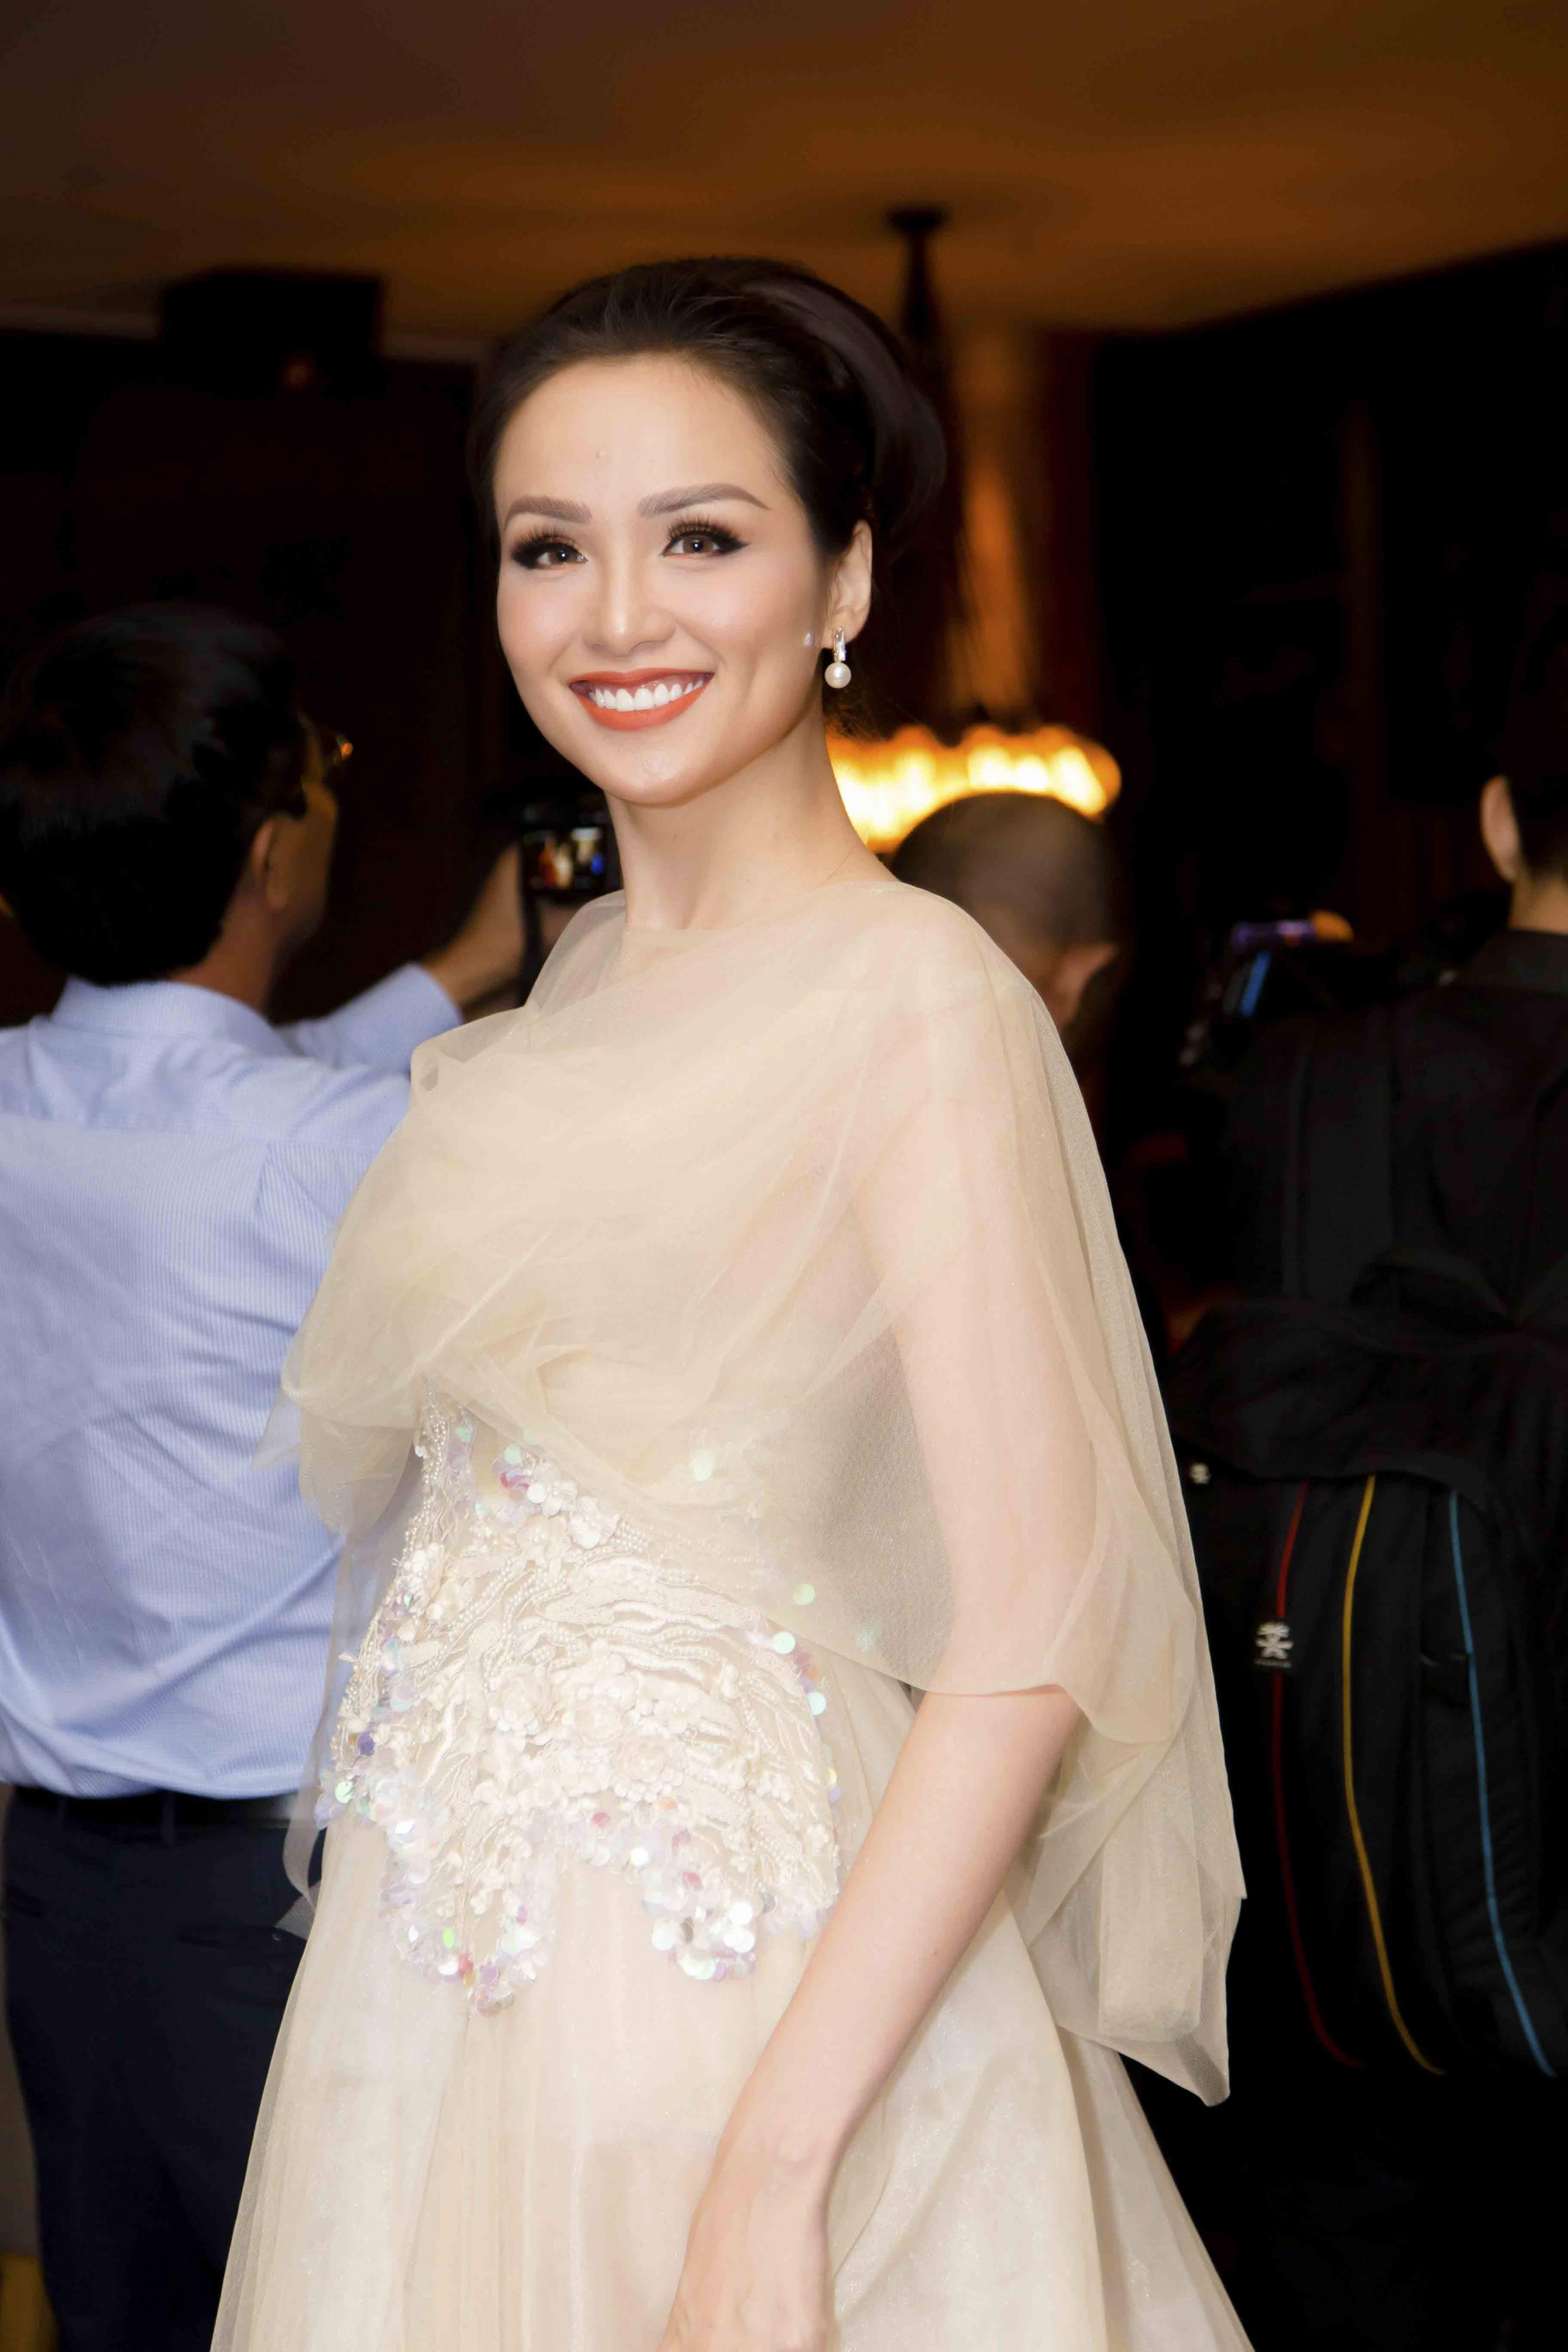 Trong khi đó, Hoa hậu Diễm Hương chọn chiếc đầm voan nhẹ nhàng, tinh tế, tôn được vẻ đẹp yêu kiều, rạng rỡ